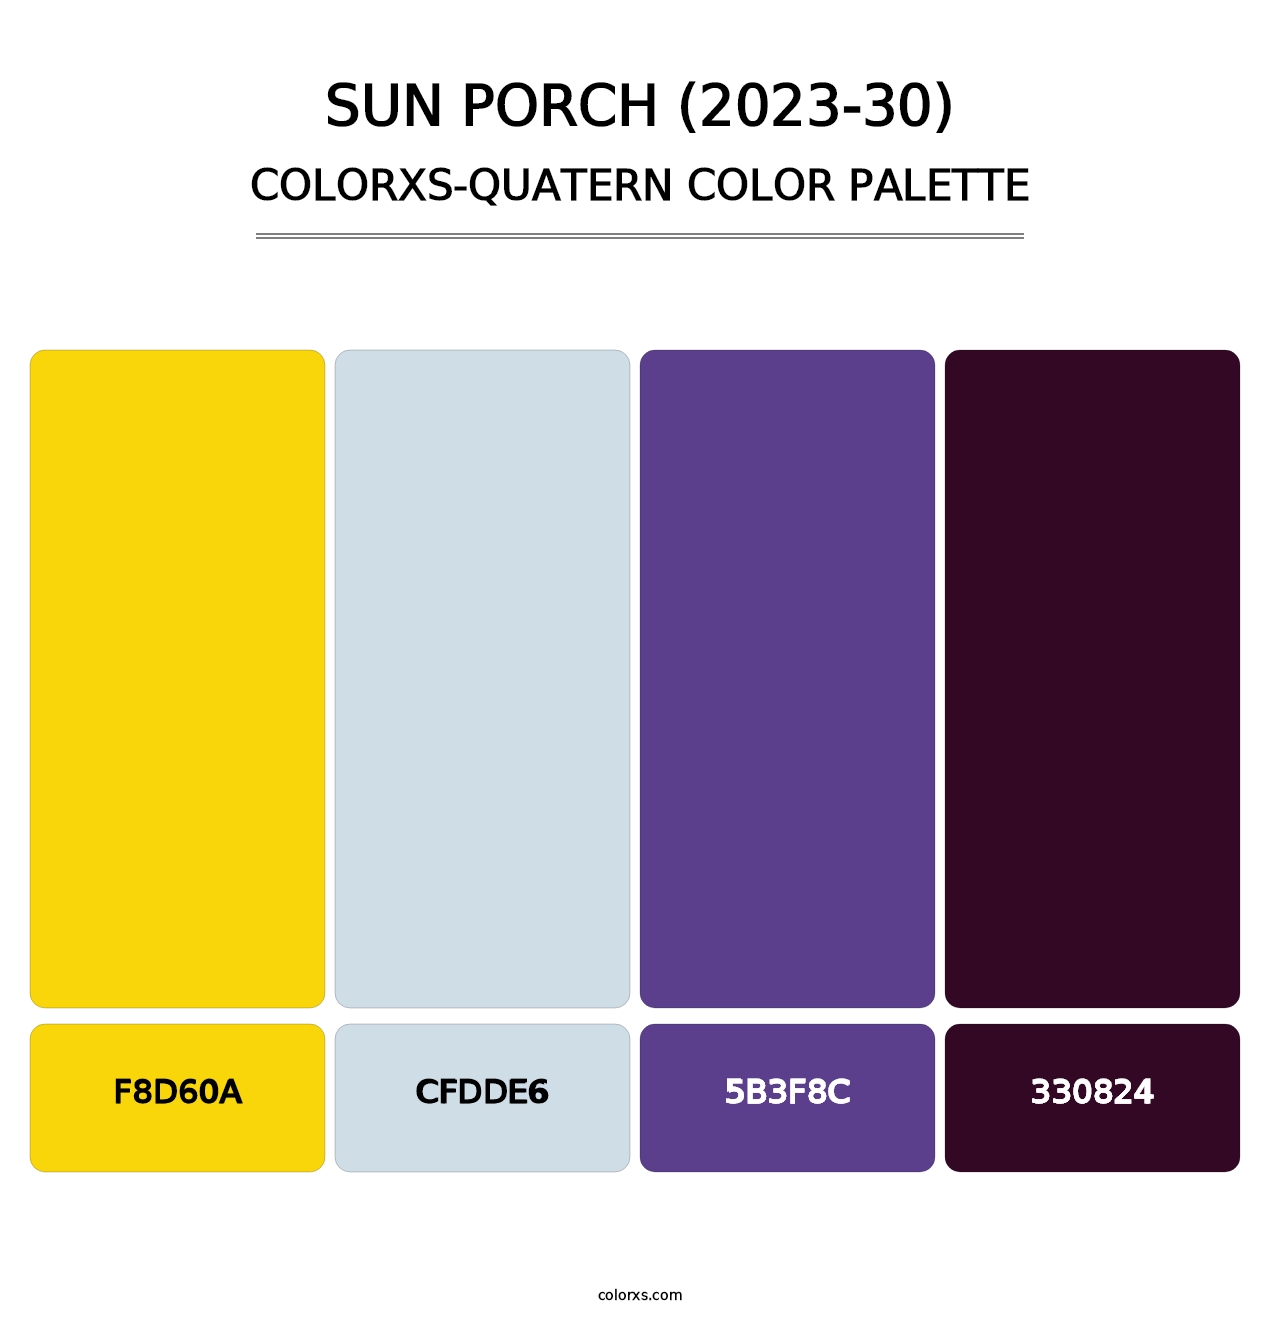 Sun Porch (2023-30) - Colorxs Quatern Palette